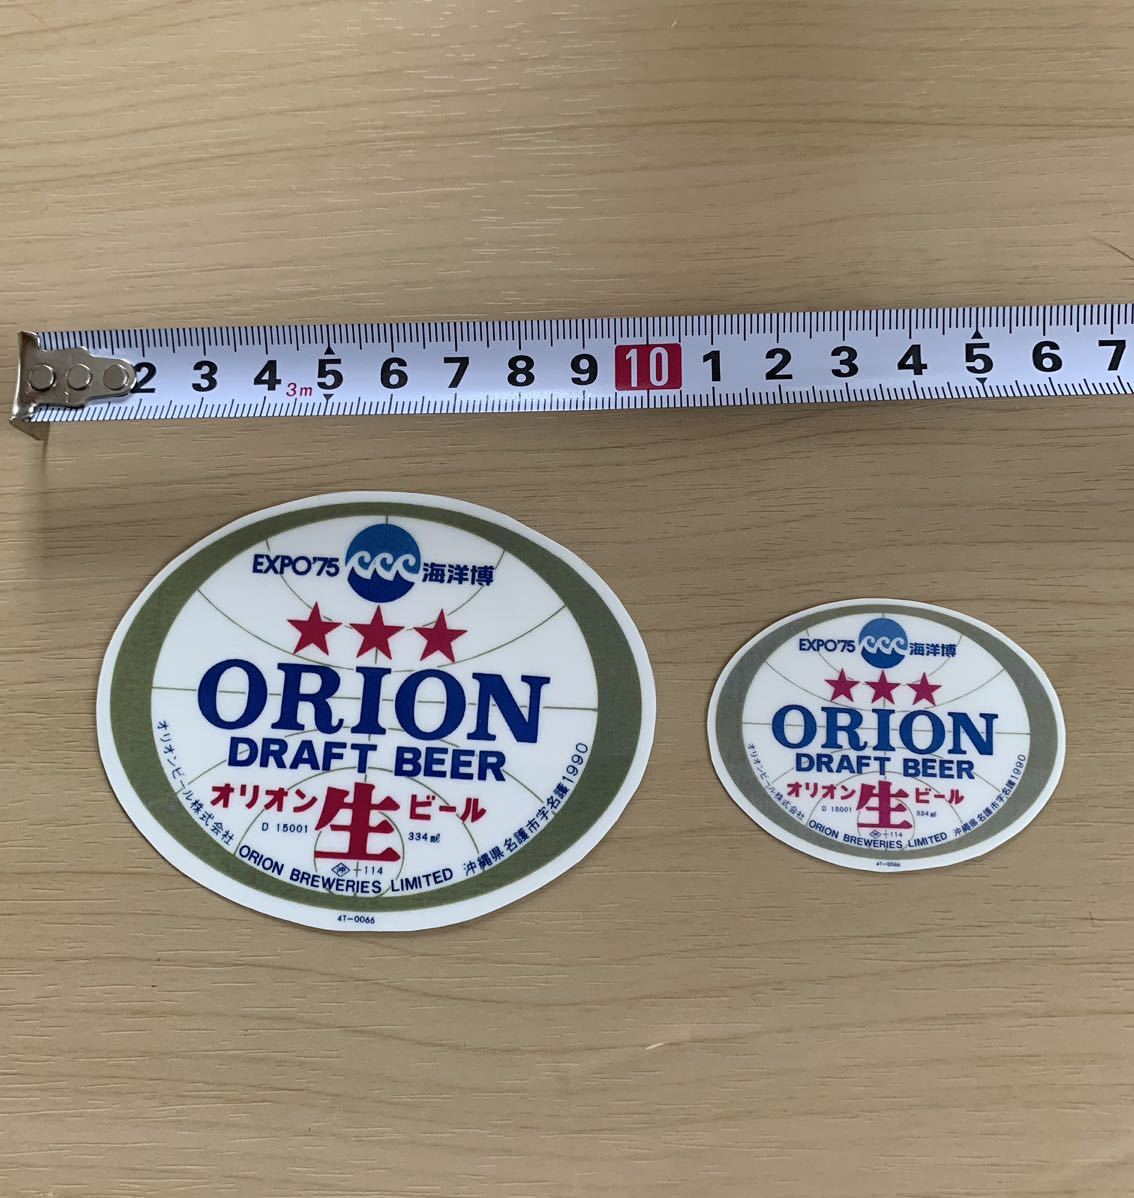  Okinawa ограничение Orion пиво & море .. память наклейка!